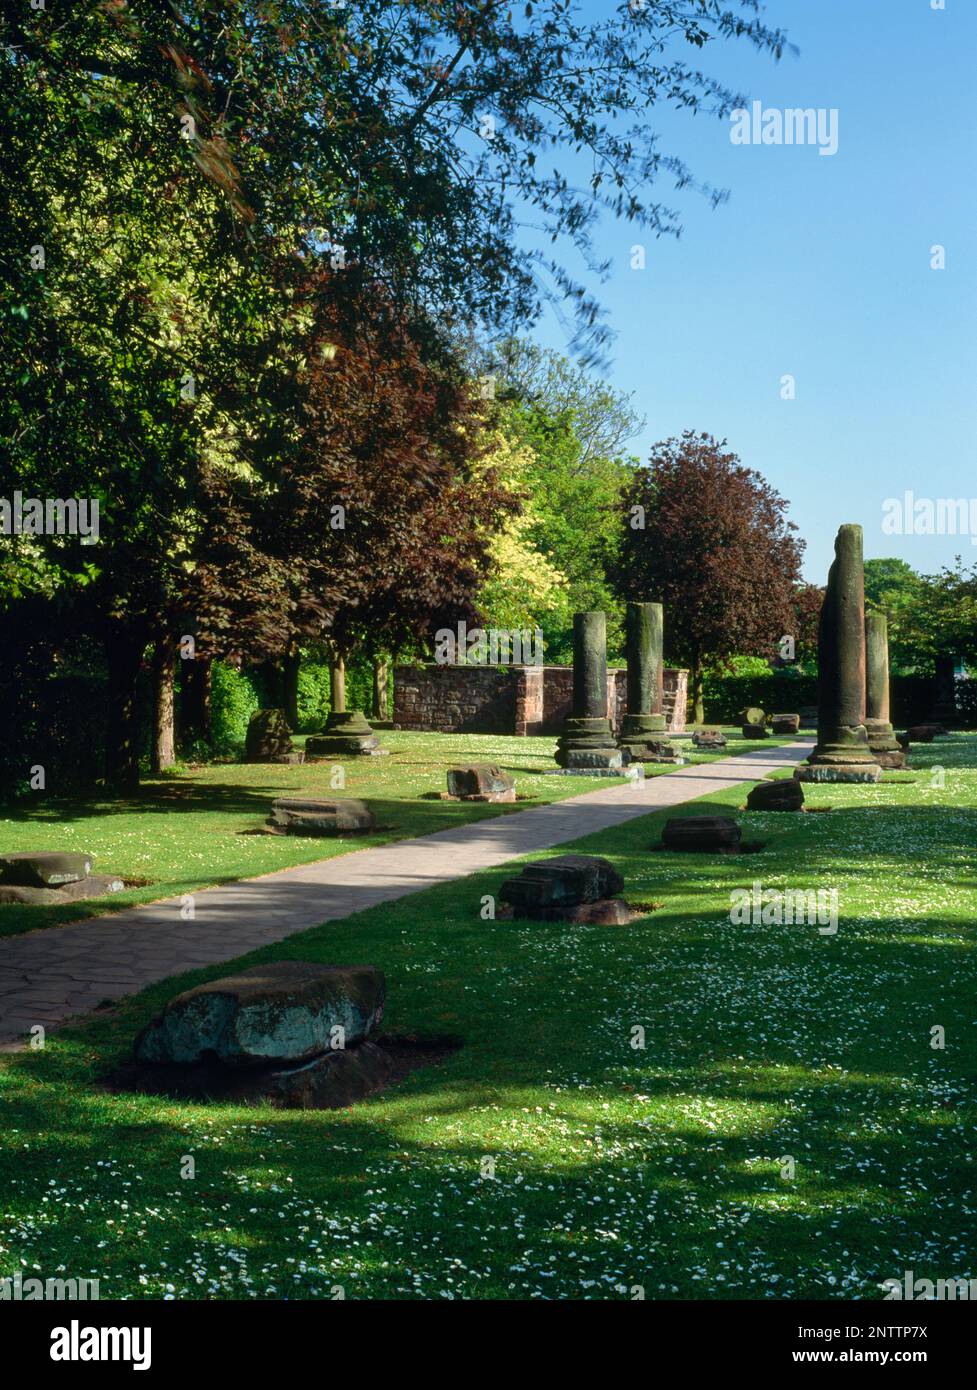 Réérigés des colonnes et autres vestiges romains dans les jardins romains de Chester, juste à l'extérieur du mur de la ville, près de Newgate, Cheshire, Angleterre, Royaume-Uni. Banque D'Images